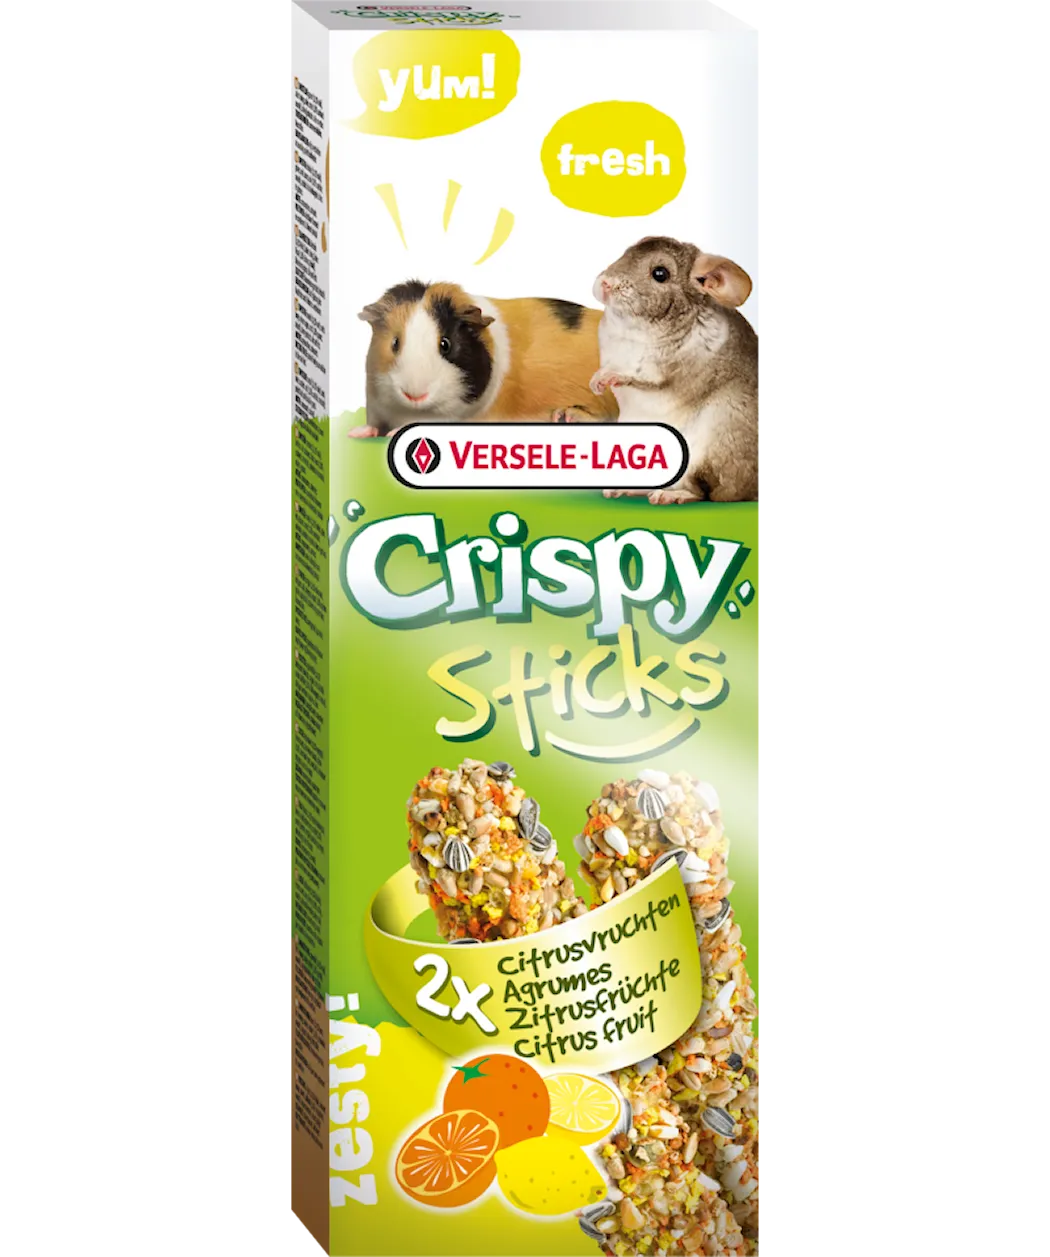 CrispySticks GuineaPig-Chinchilla Citrus 2-pack